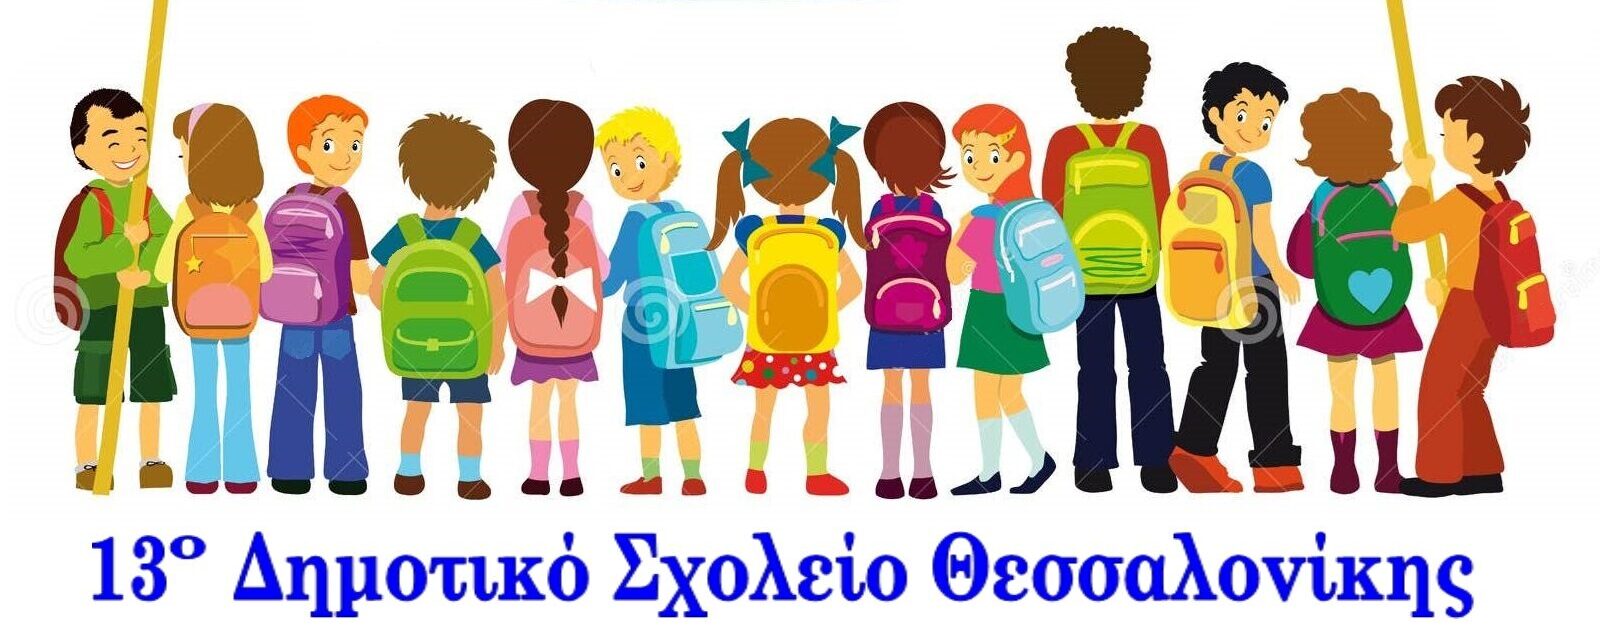 13° Δημοτικό Σχολείο Θεσσαλονίκης